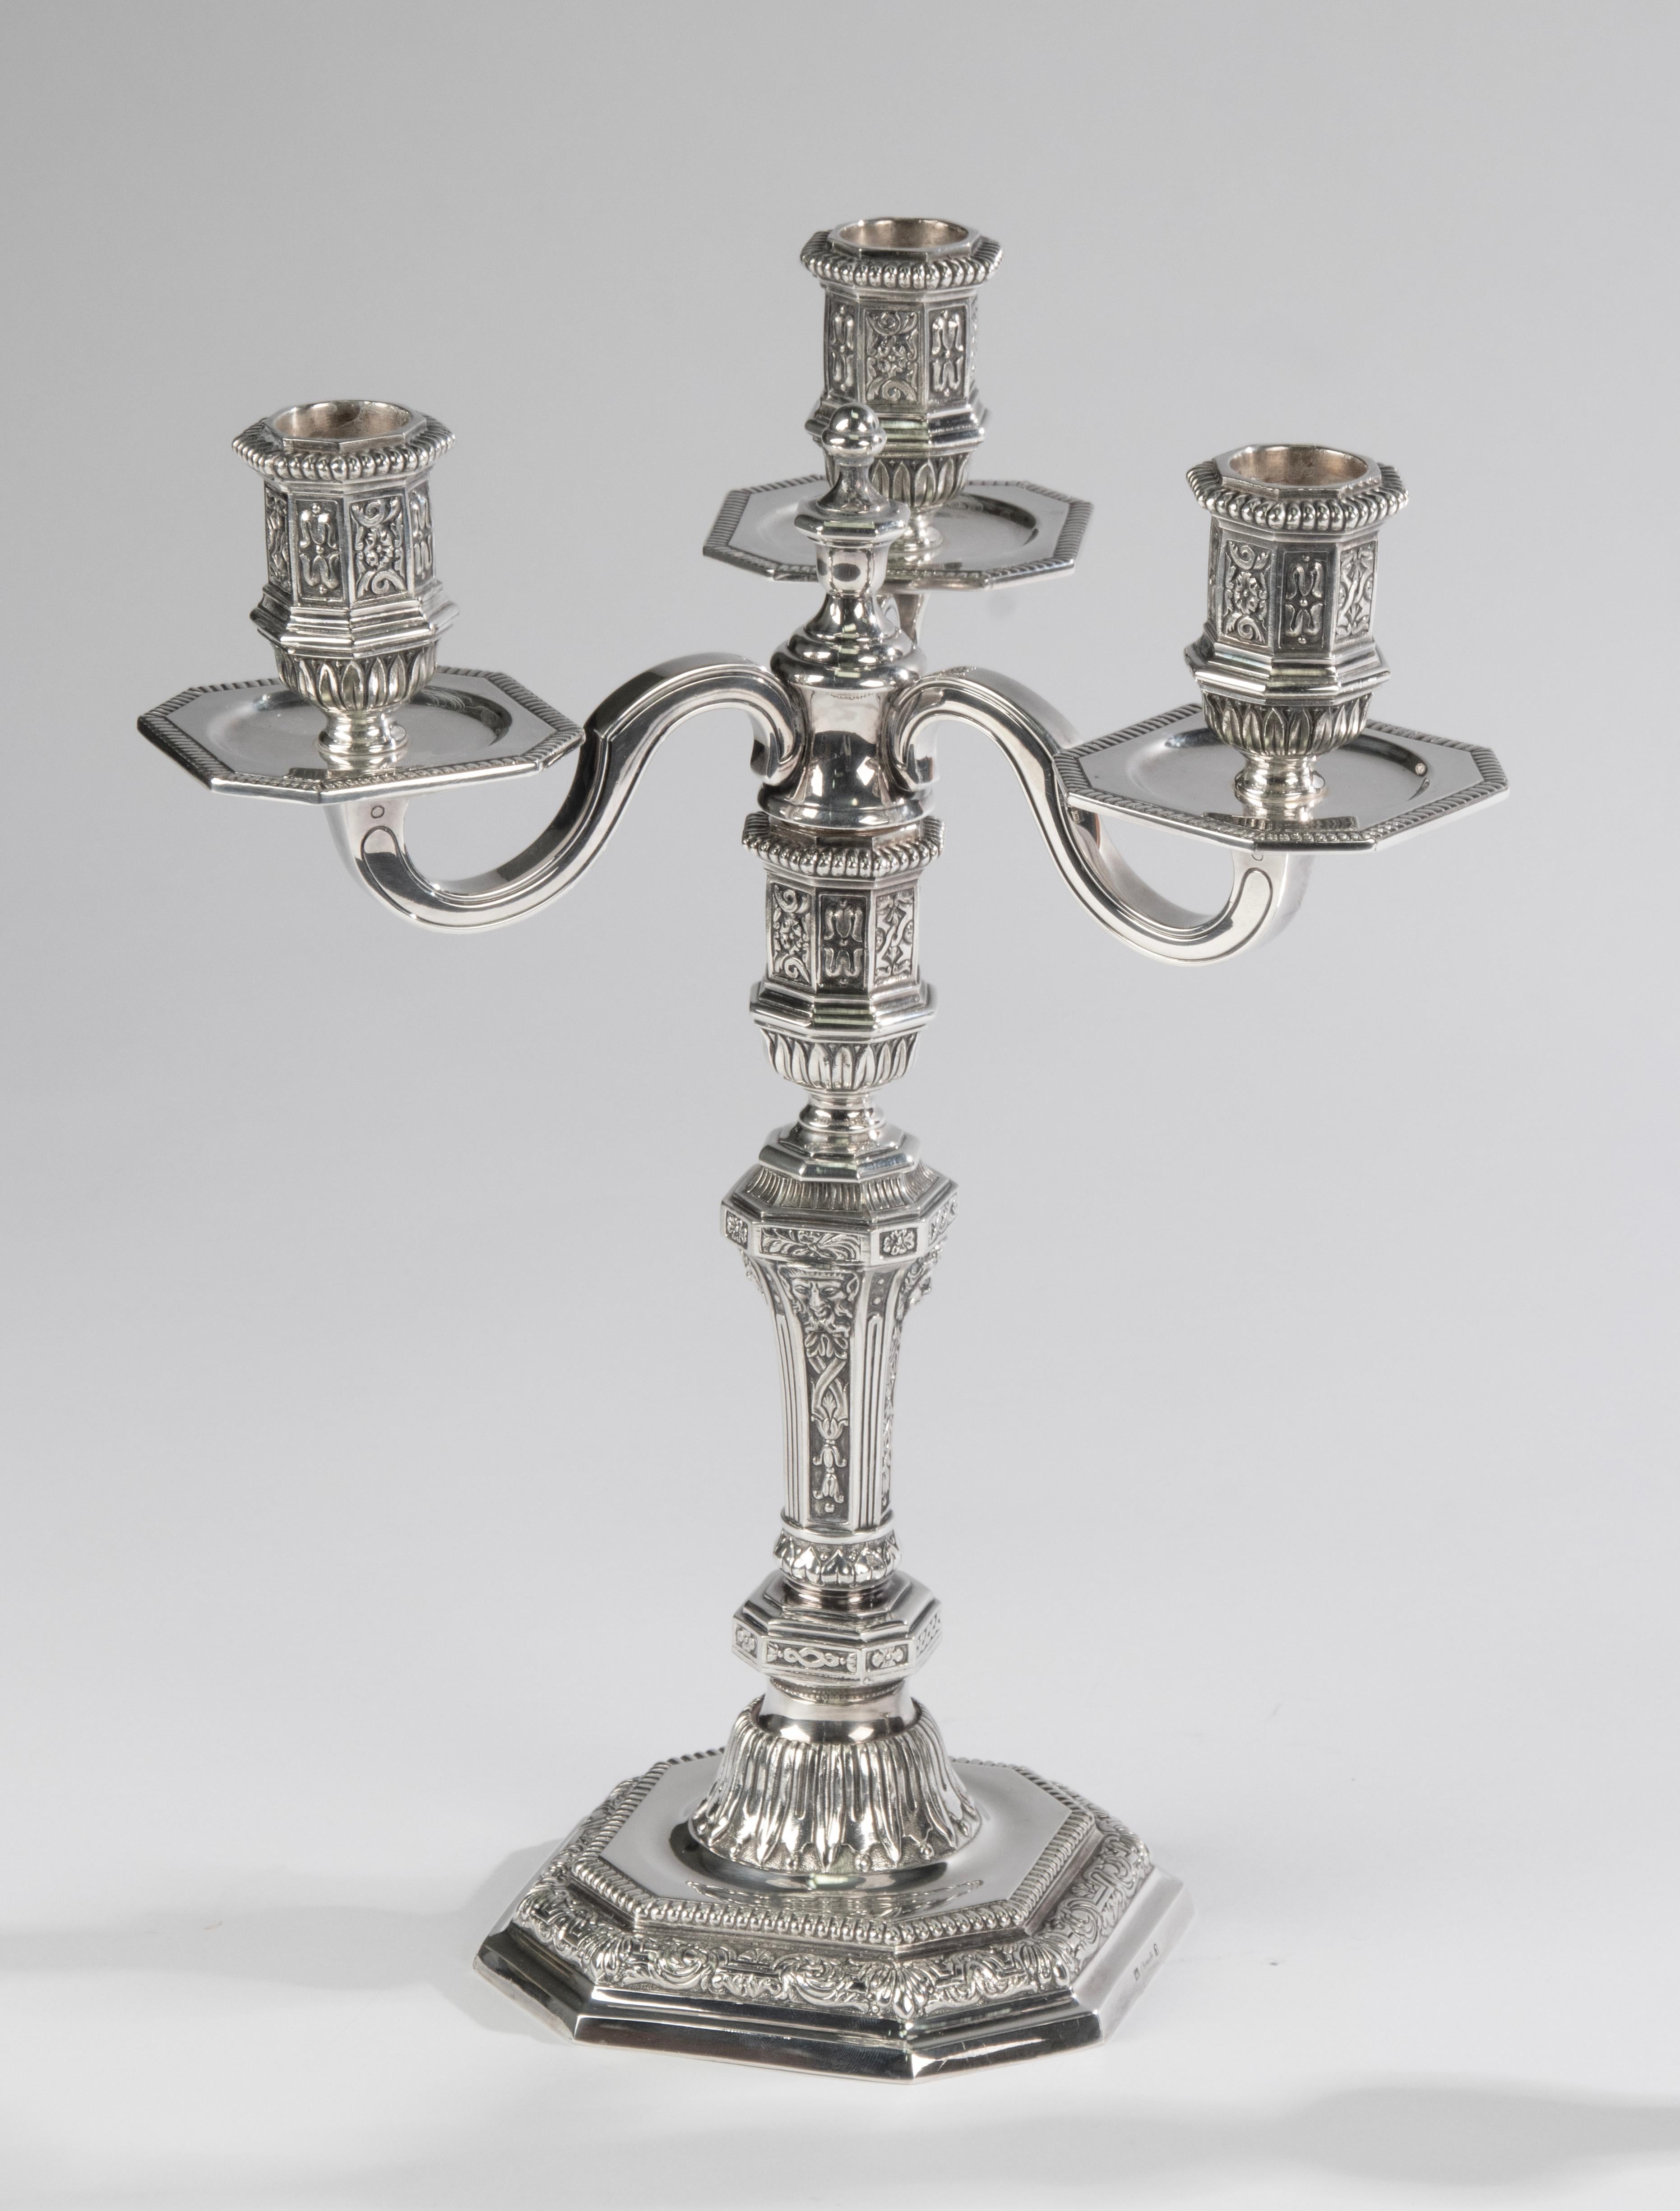 Un superbe ensemble de 2 candélabres en métal argenté, fabriqué par la marque française Christofle. 
Les candélabres sont conçus par Louis Dupérier dans un style renaissance. 
Très raffiné, avec de nombreuses décorations détaillées. 
Chaque bougie